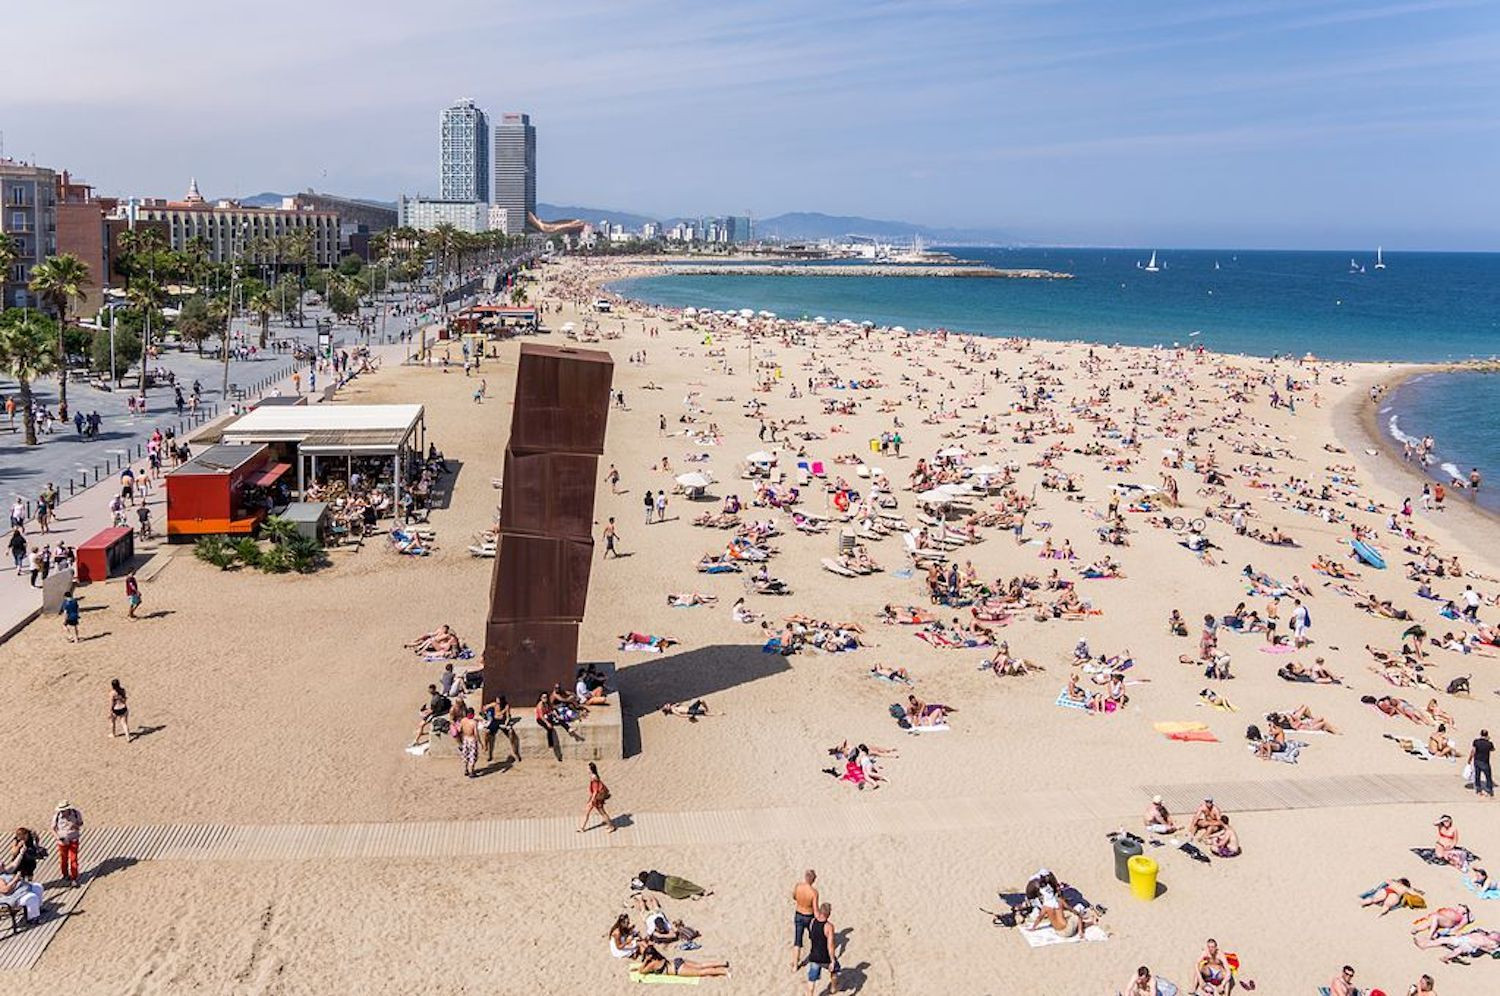 Muchos bañistas en las playas de Barcelona / AYUNTAMIENTO DE BARCELONA